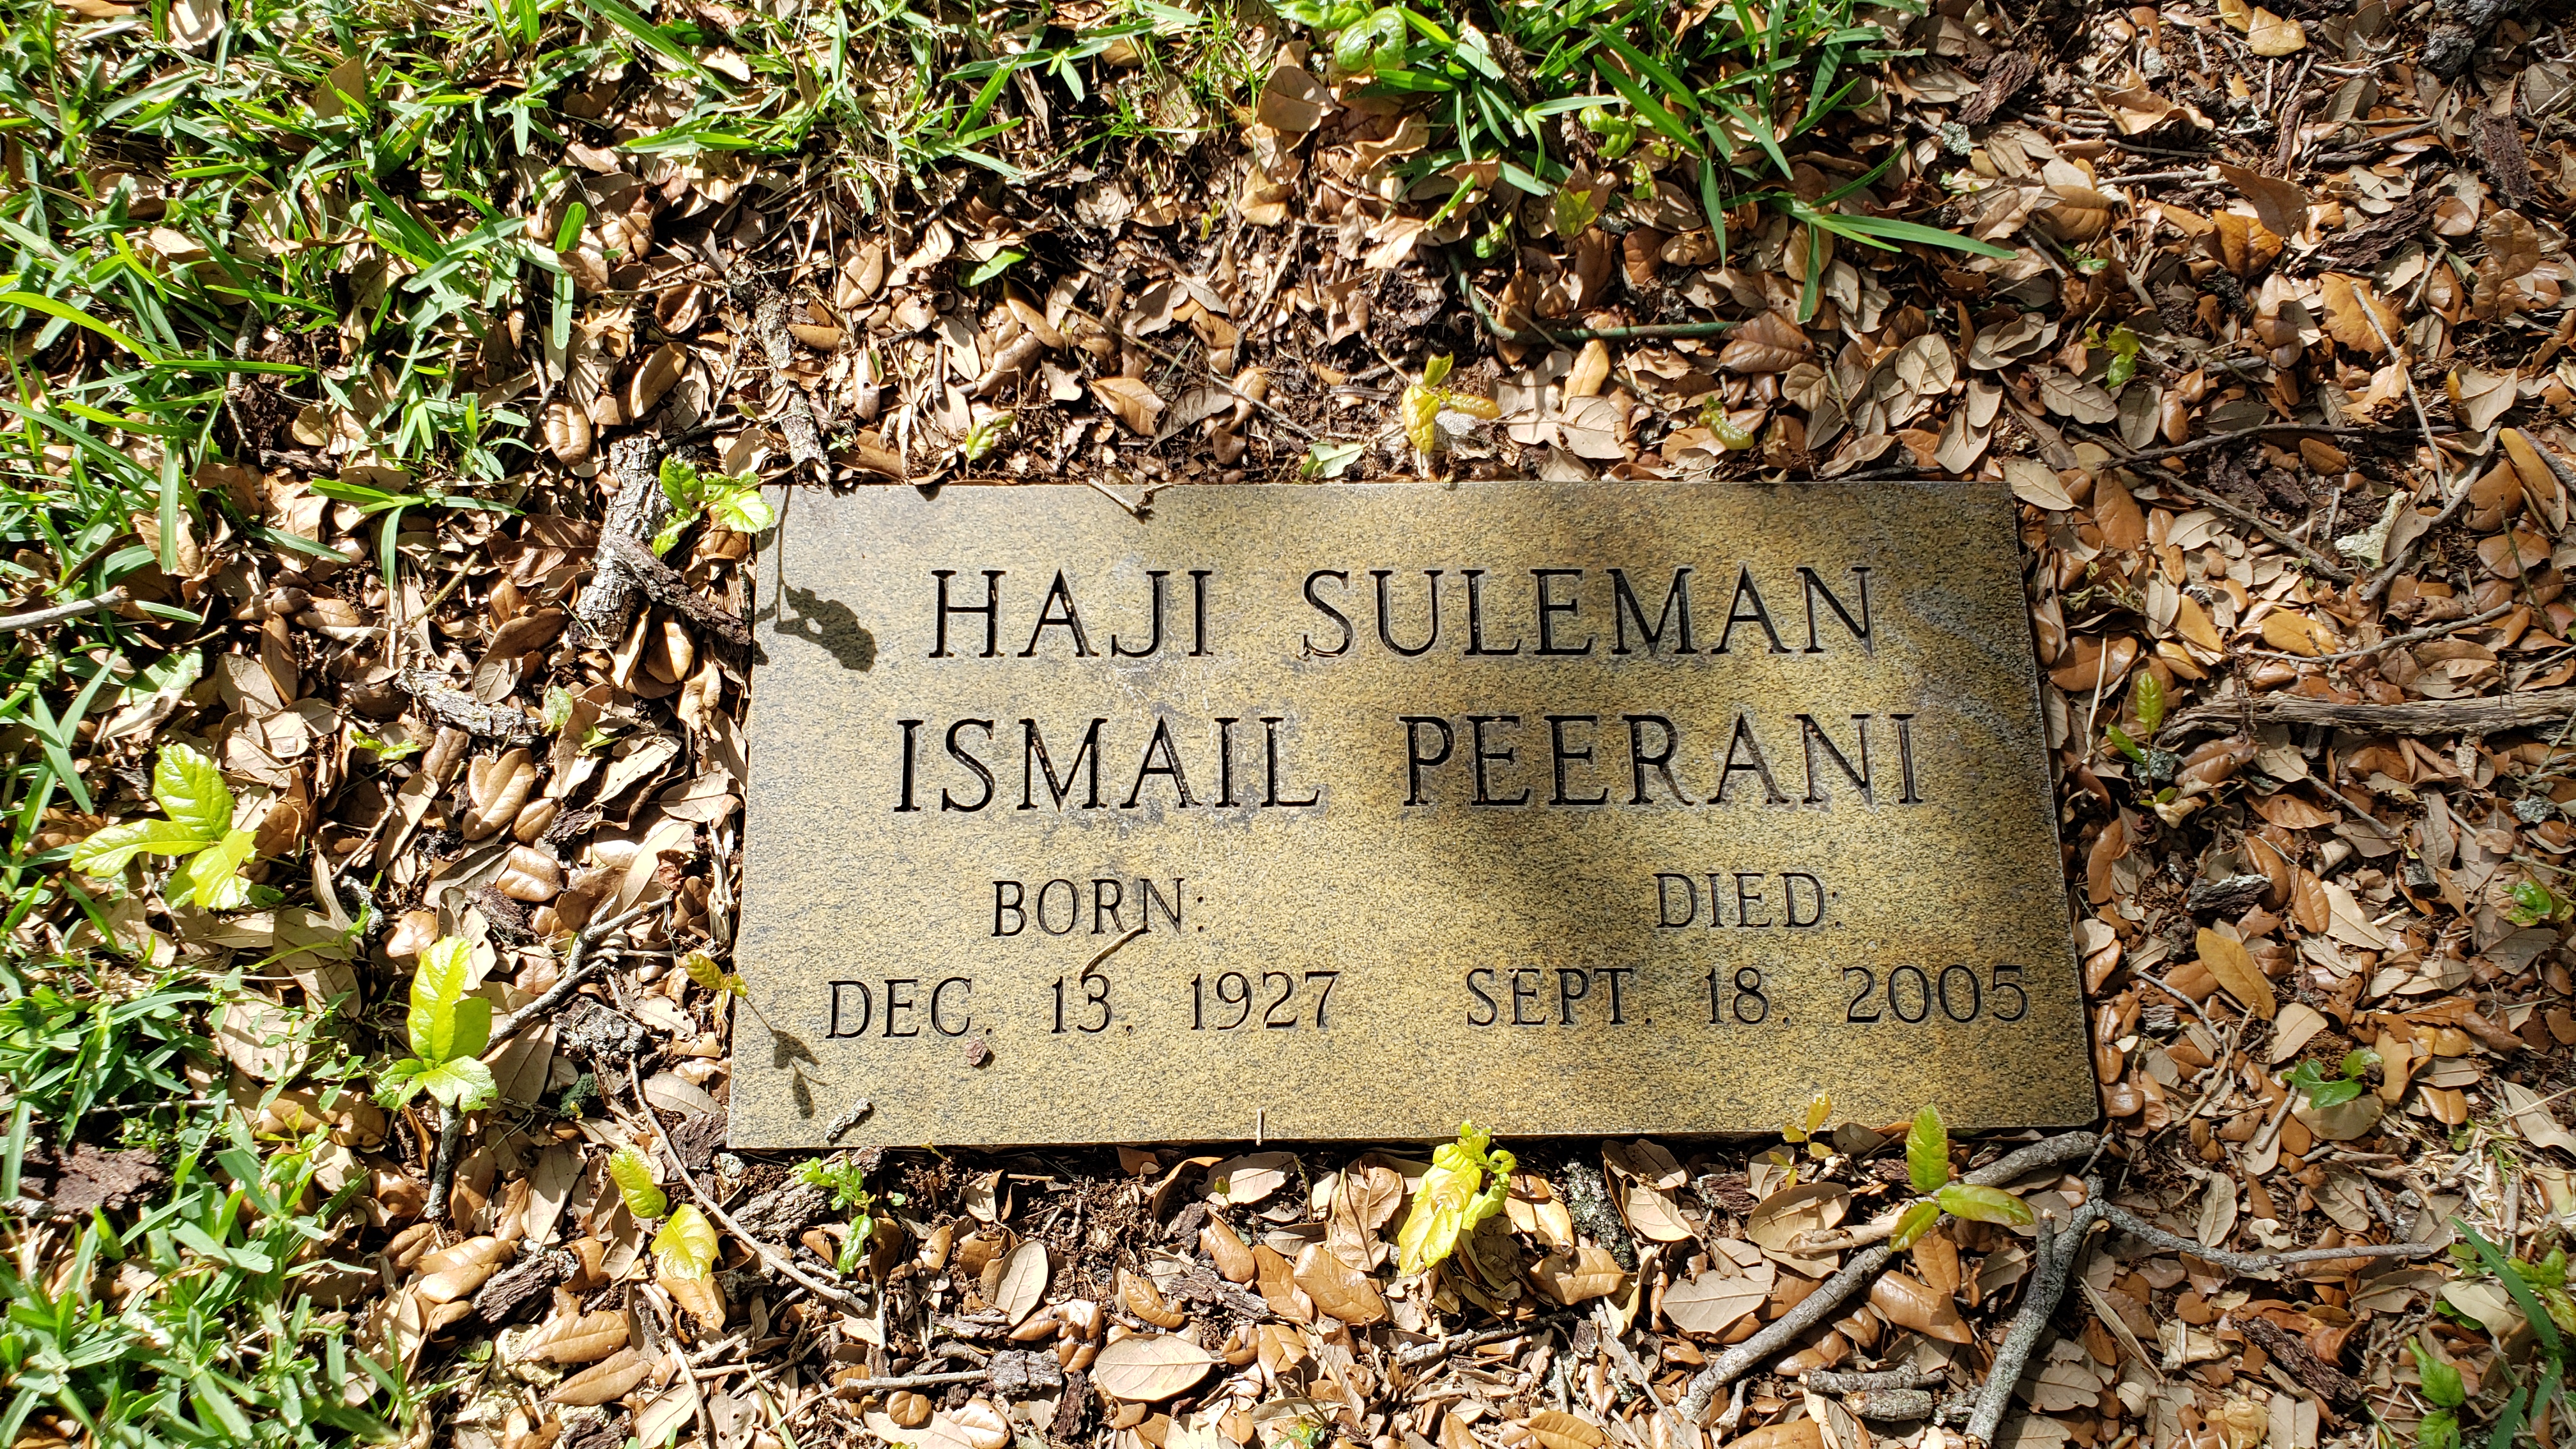 Haji Suleman Ismail Peerani